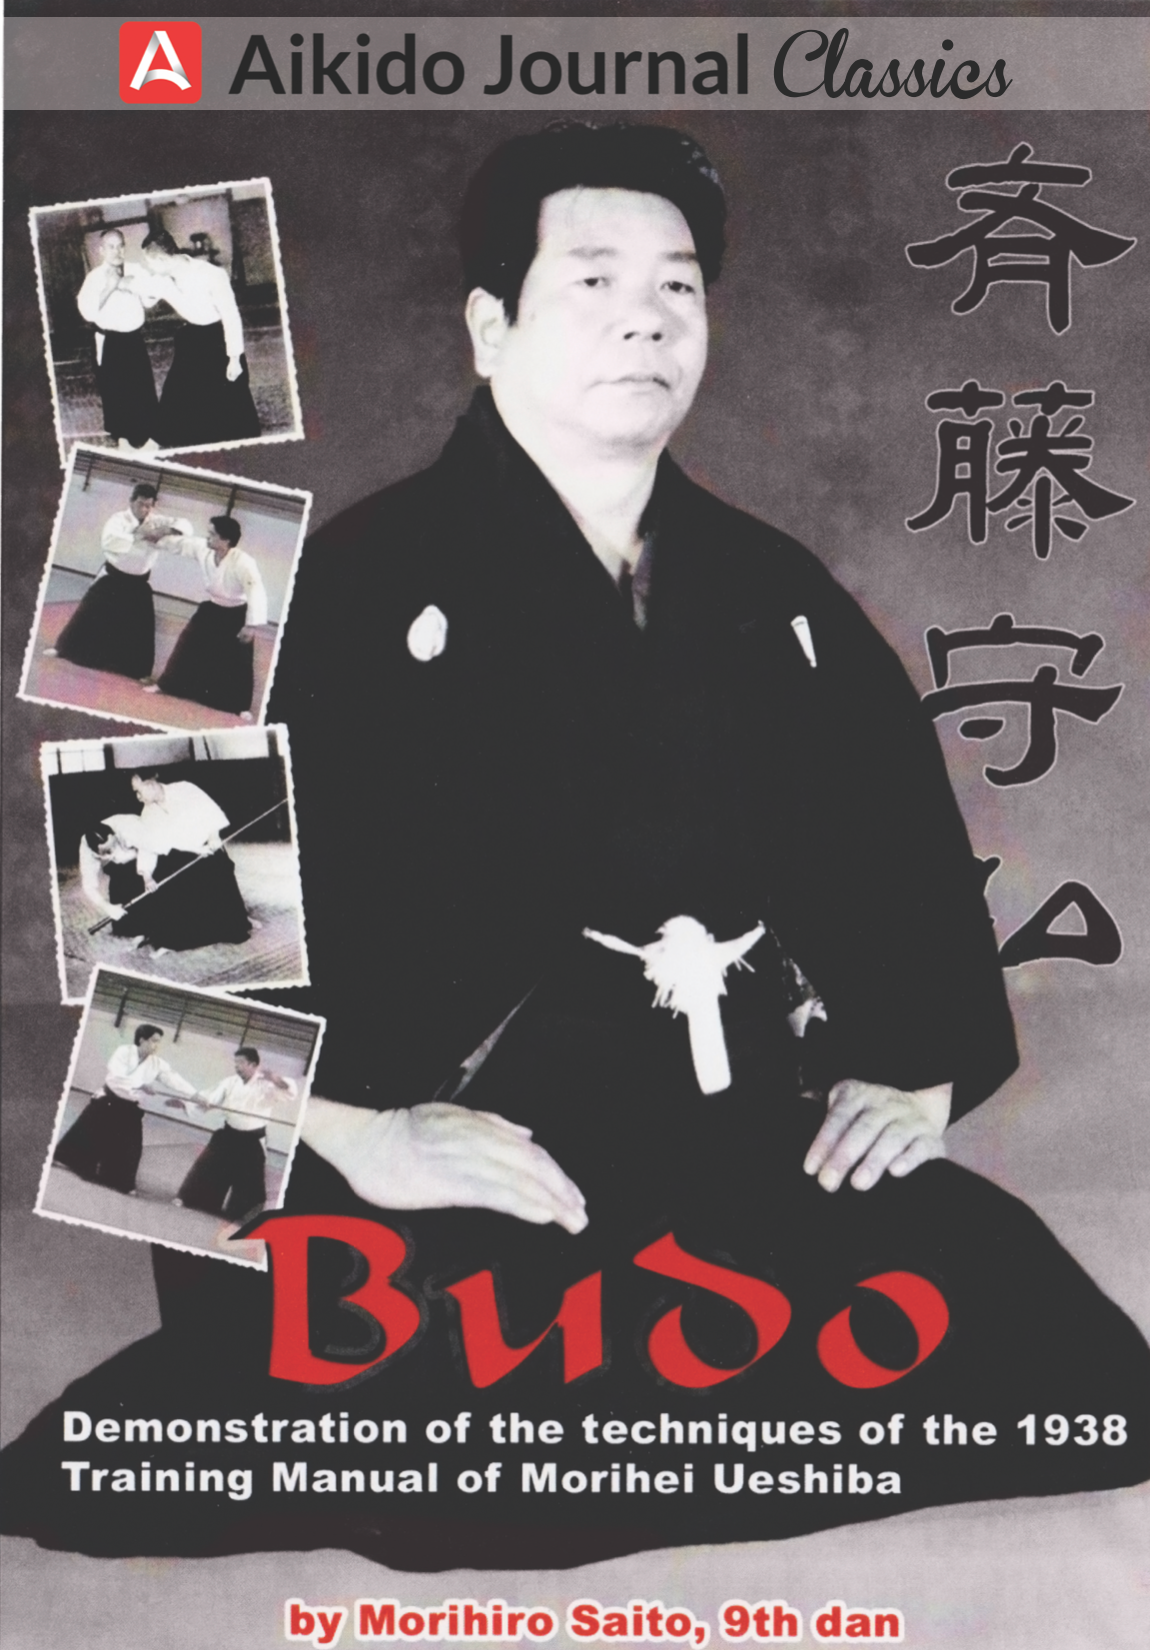 DVD de Budo de Morihiro Saito (usado)